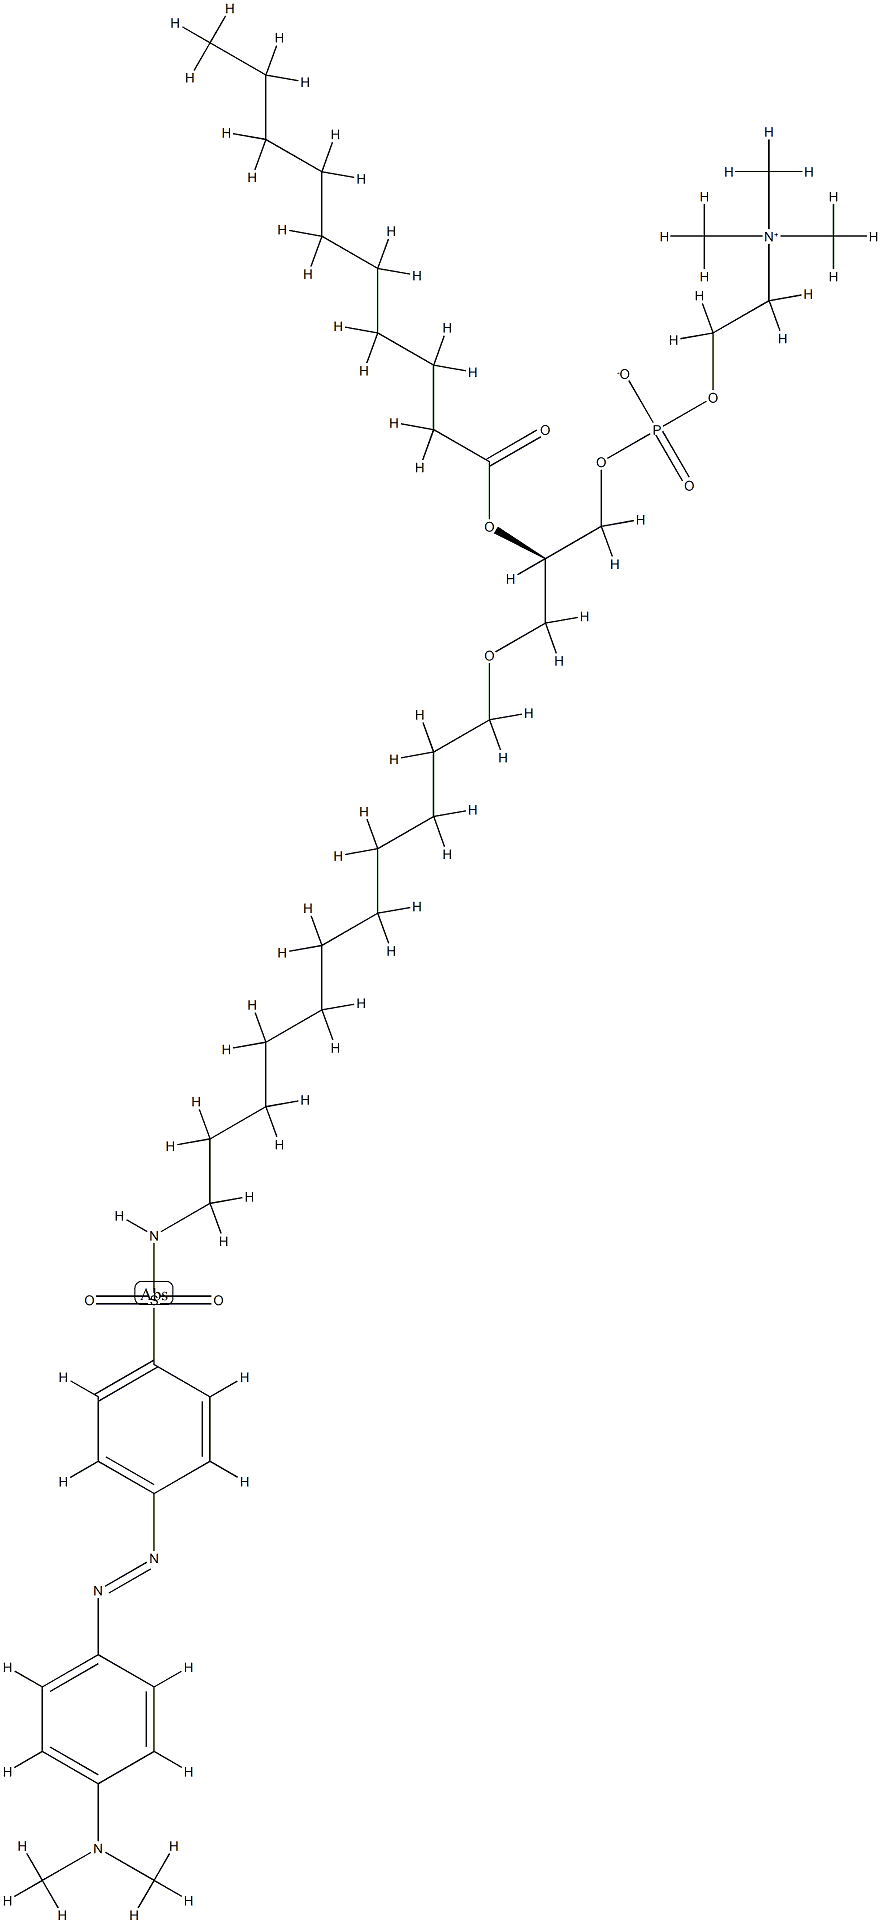 1-O-(N-dabsyl-11-amino-1-undecyl)-2-O-decanoylphosphatidylcholine